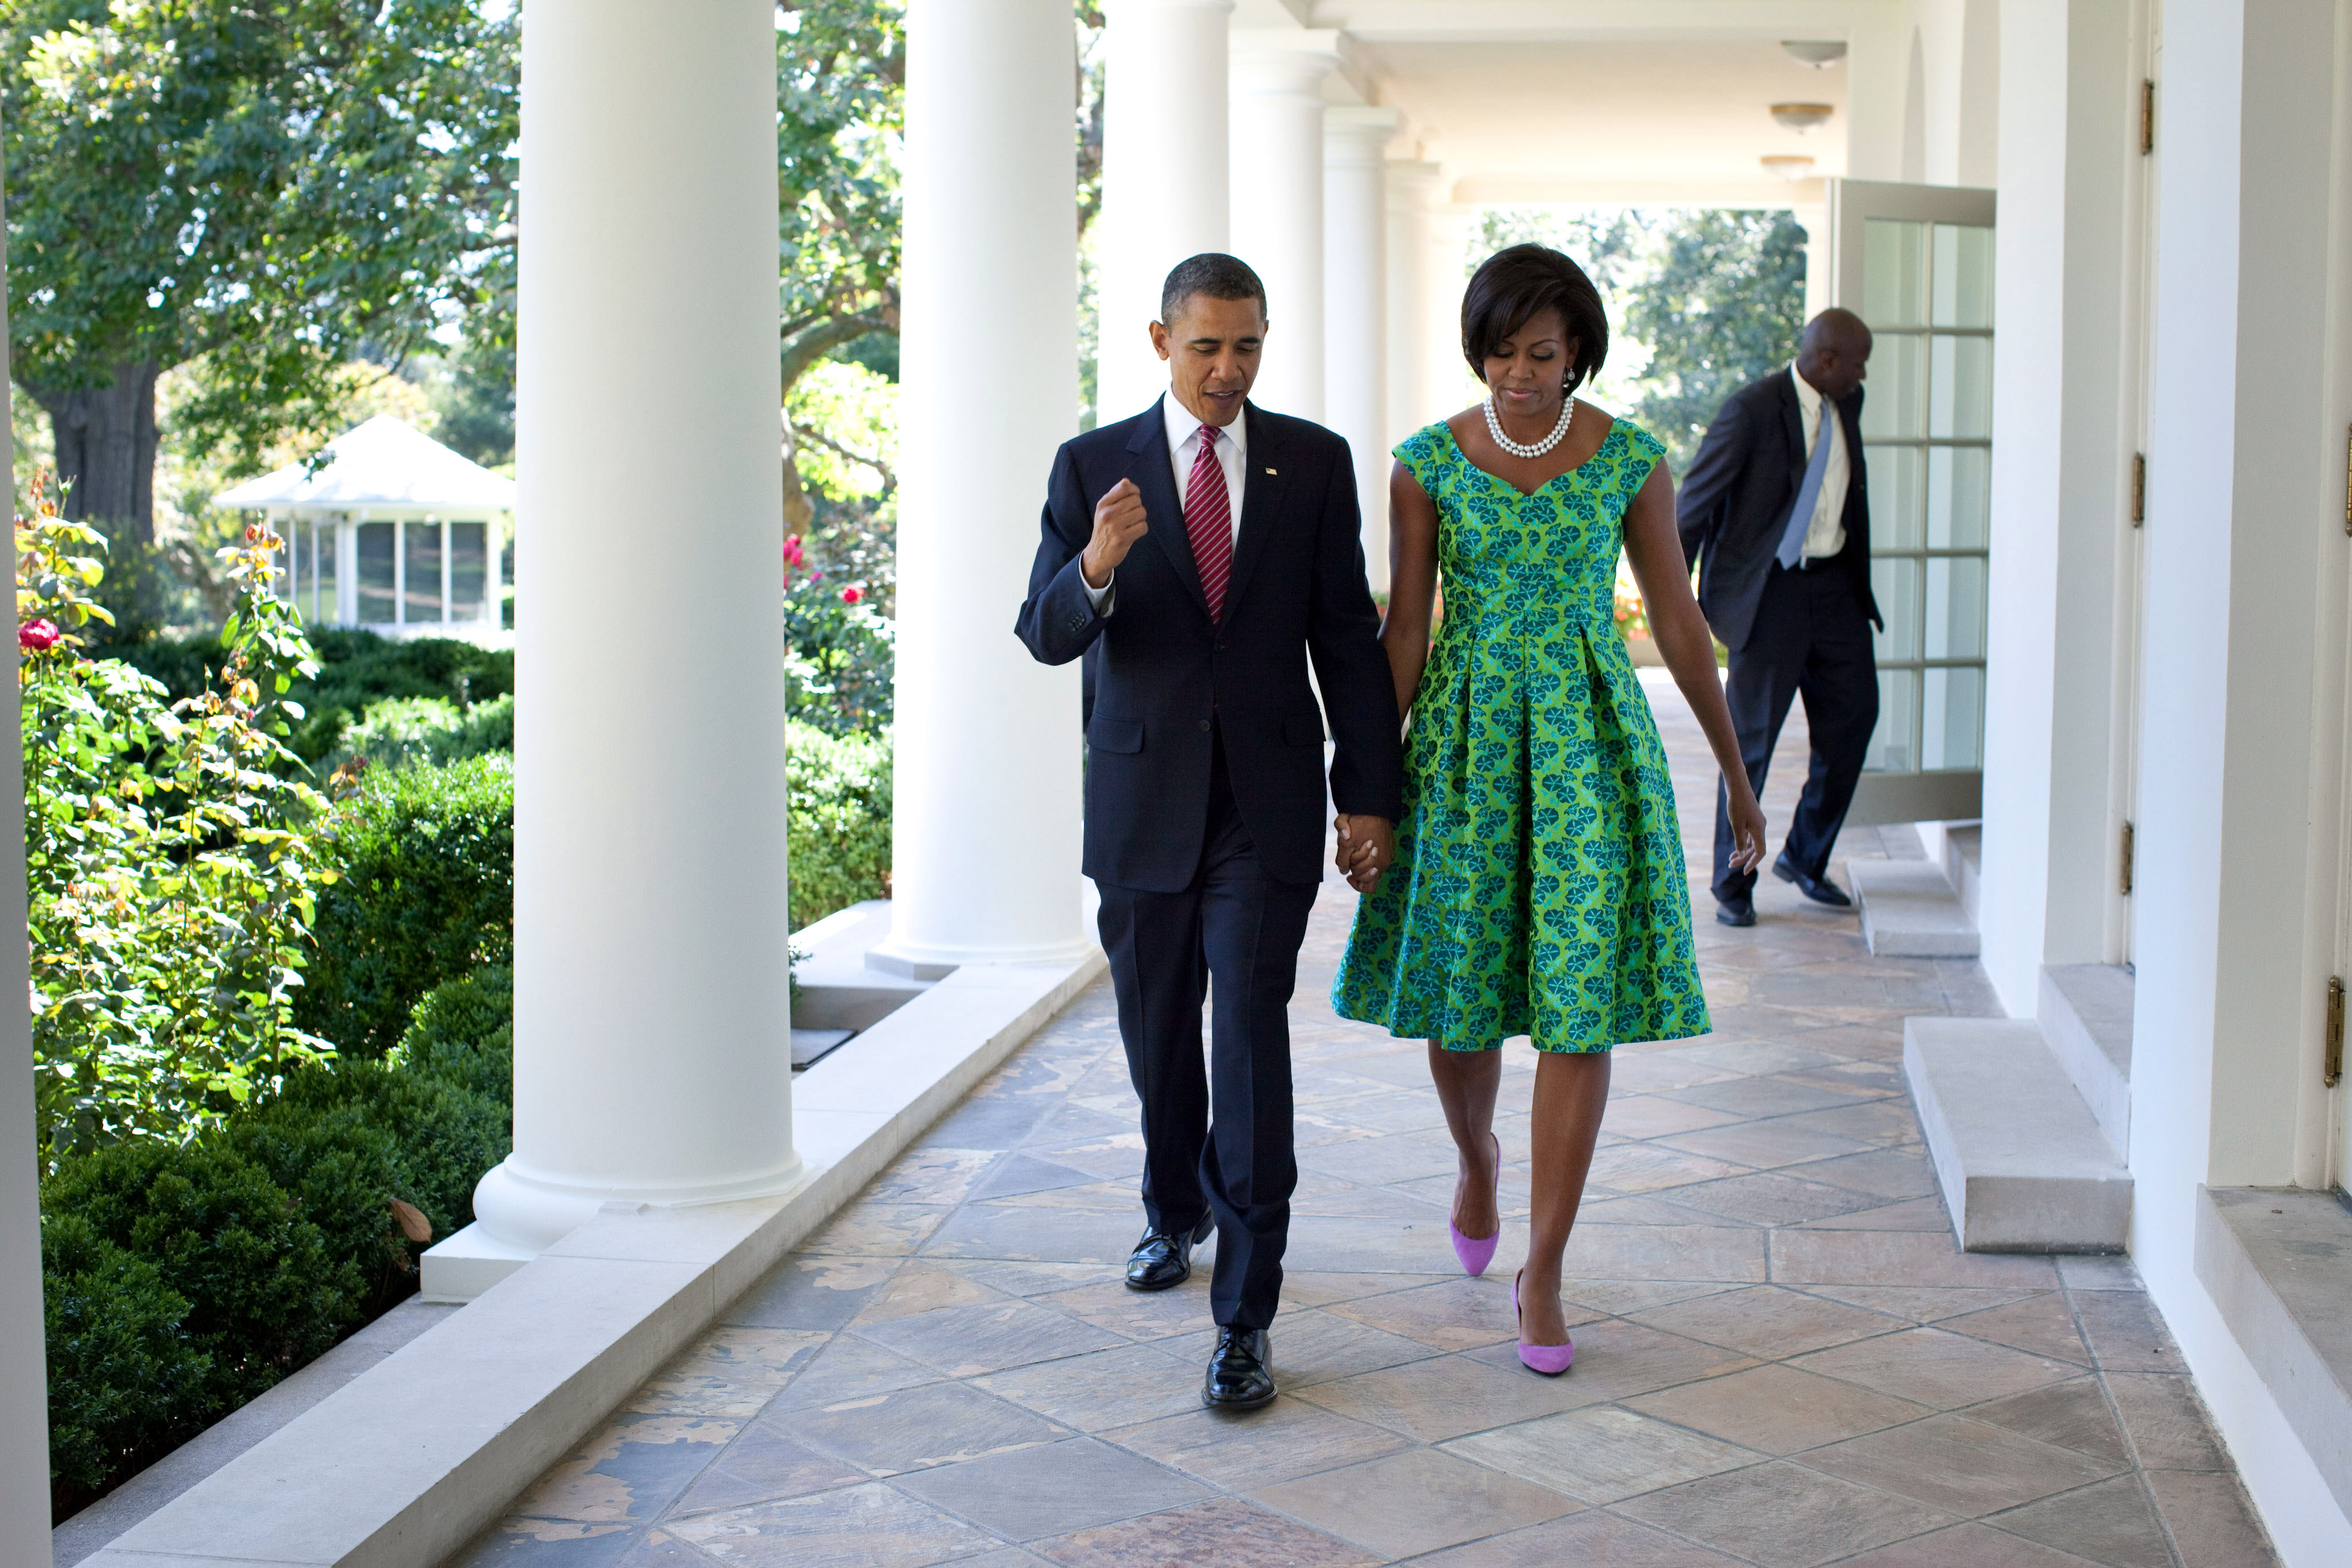 Estilosa, Michelle Obama escolheu um vestido estampado de Barbara Tfank para uma foto institucional da Casa Branca